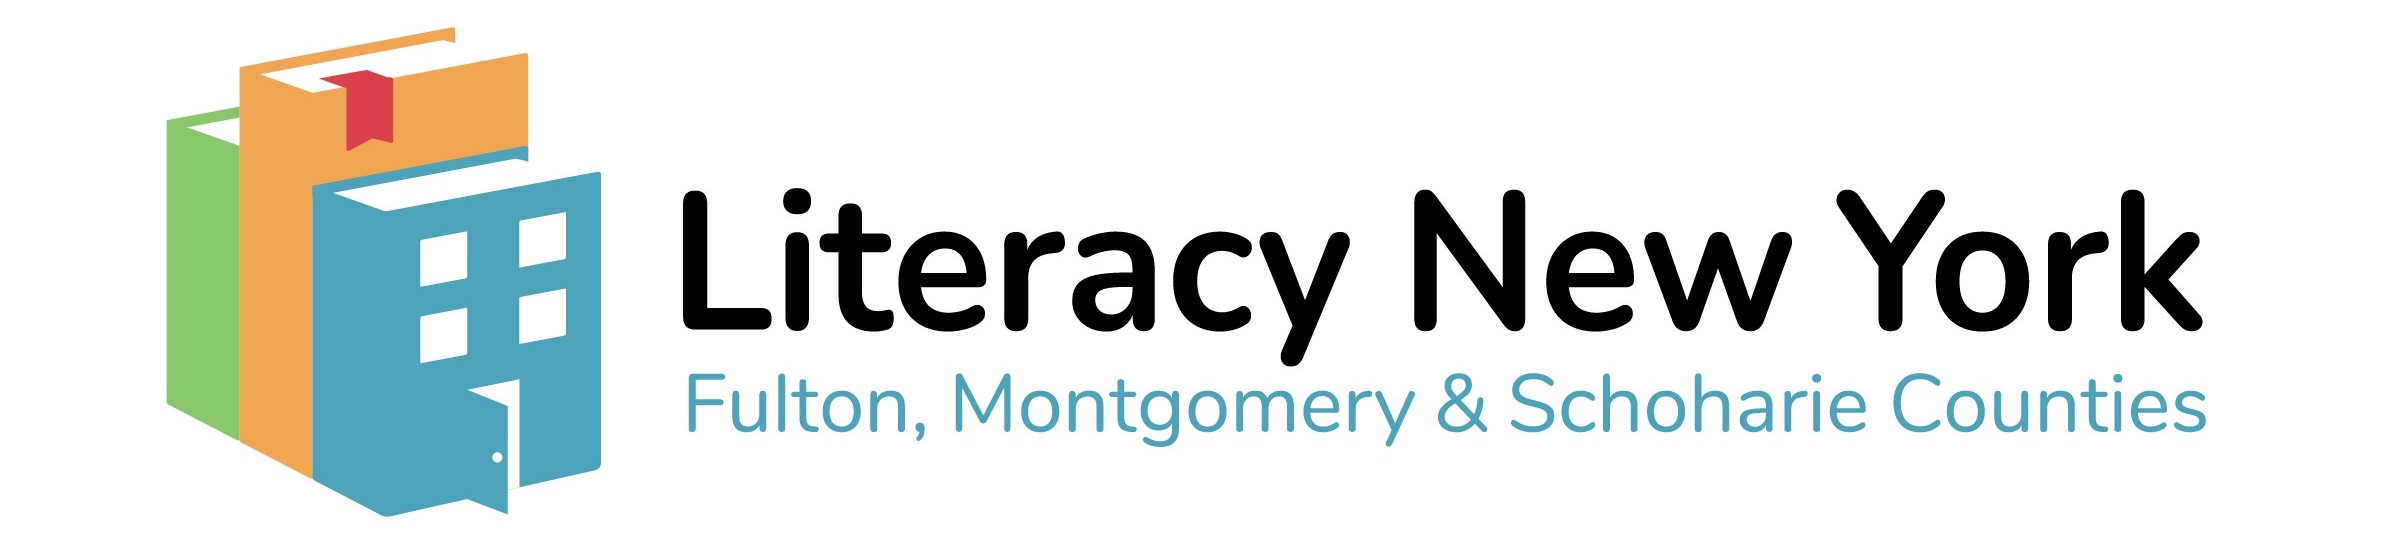 Literacy NY Horizontal Logo